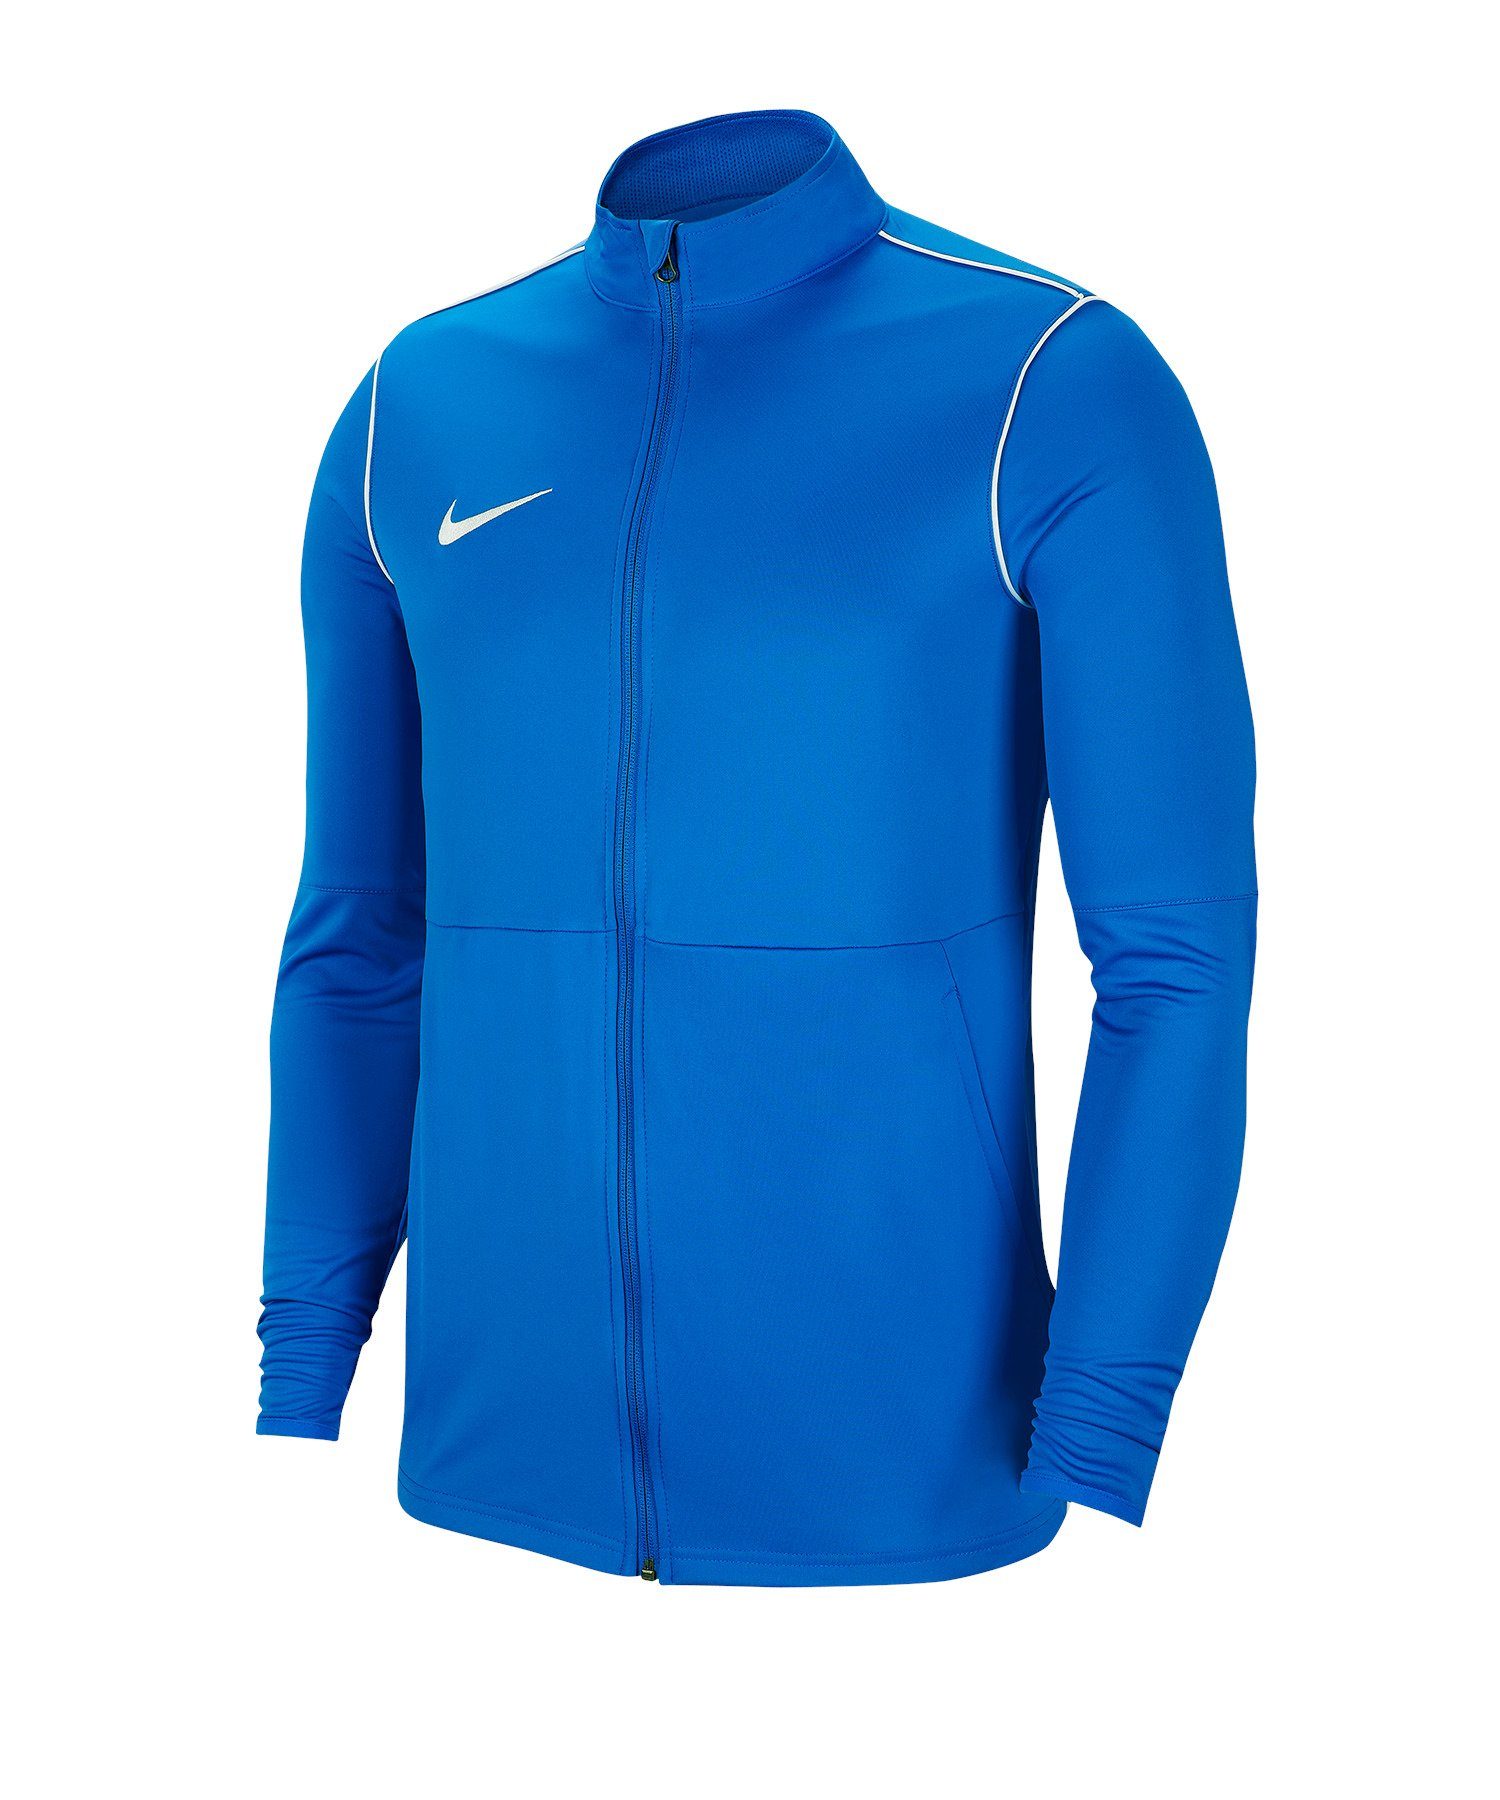 Park Jacke 20 blauweiss Training Sweatjacke Nike